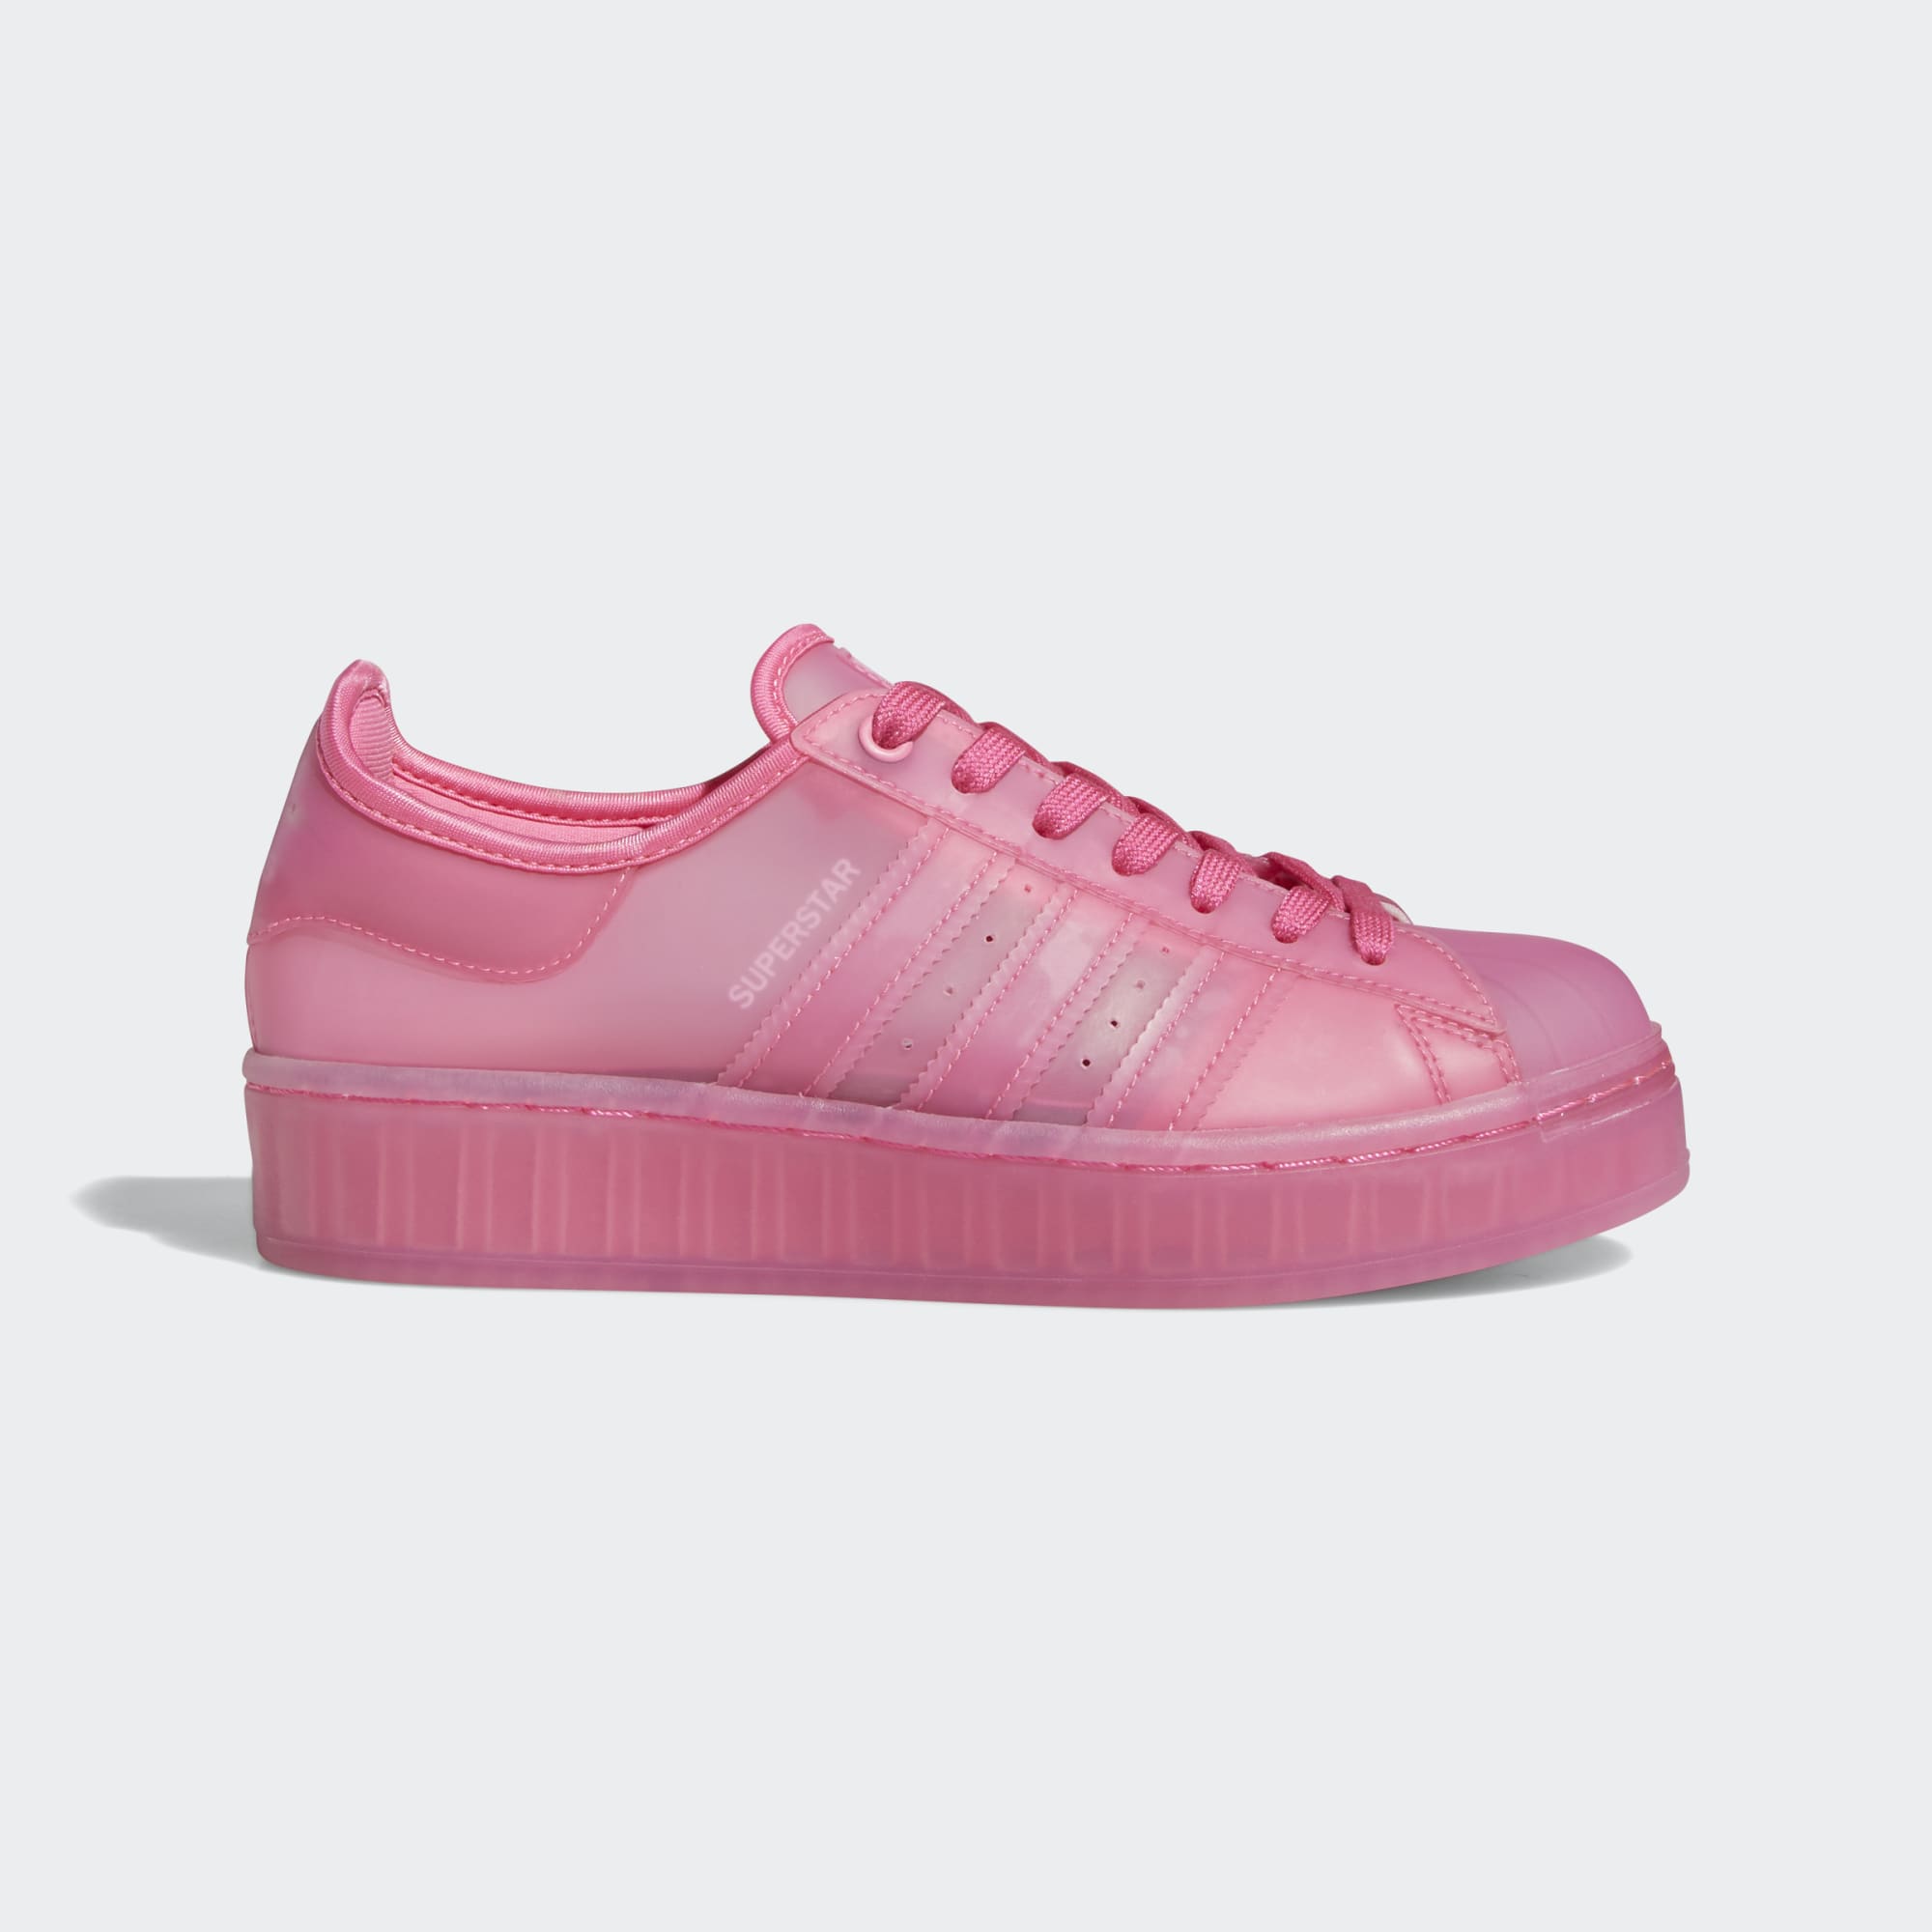 Gran roble Contribución Por cierto adidas Originals Women's Superstar Translucent Jelly - Pink FX4322 - Trade  Sports